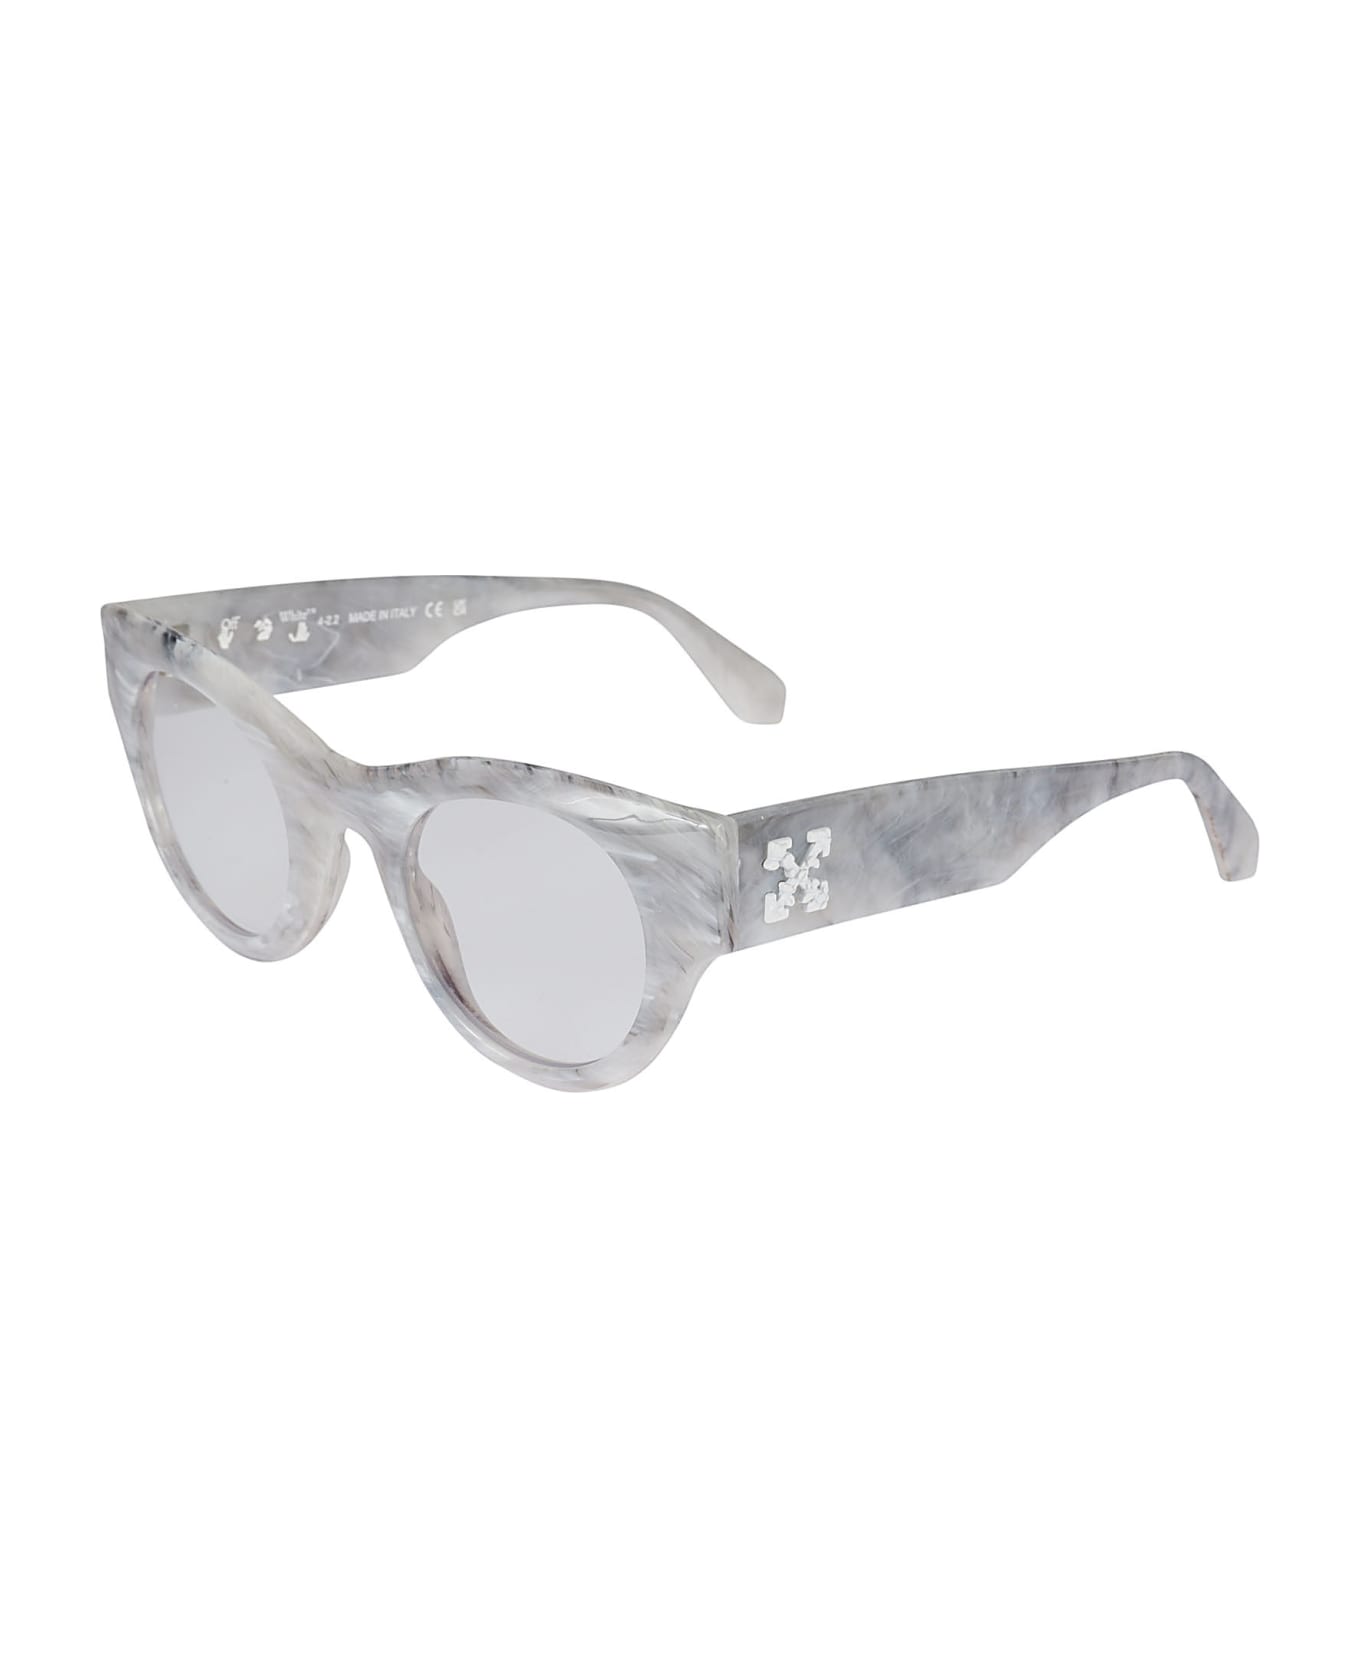 Off-White Optical Style Glasses - Marble アイウェア